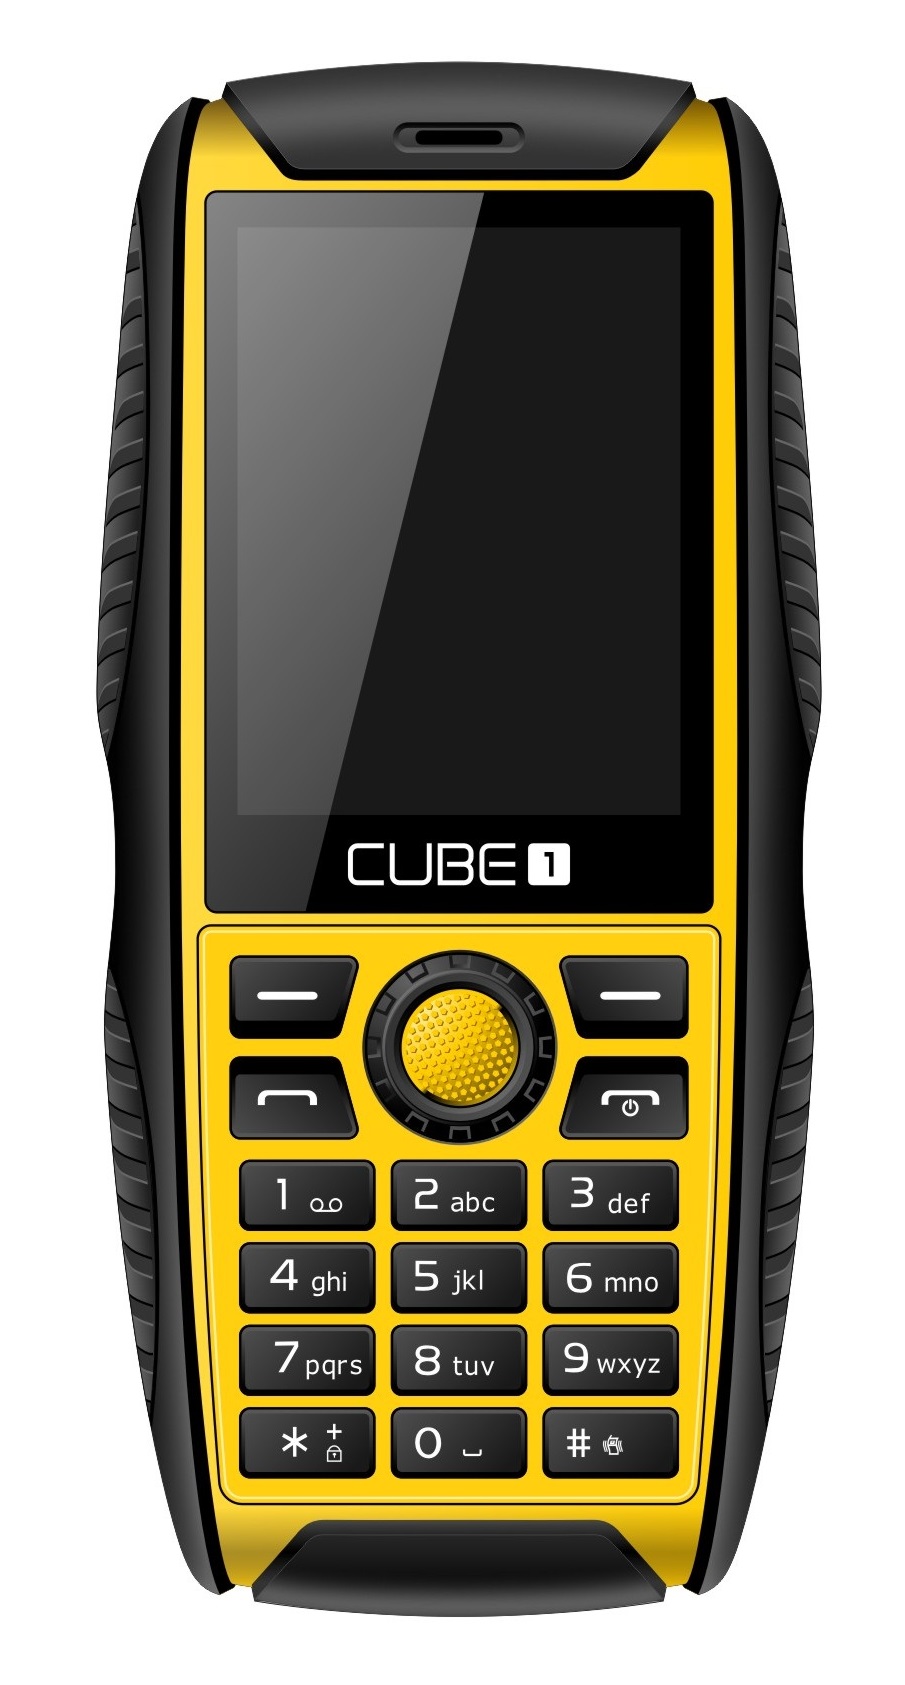 Mobilní telefon CUBE1 S200 Yellow